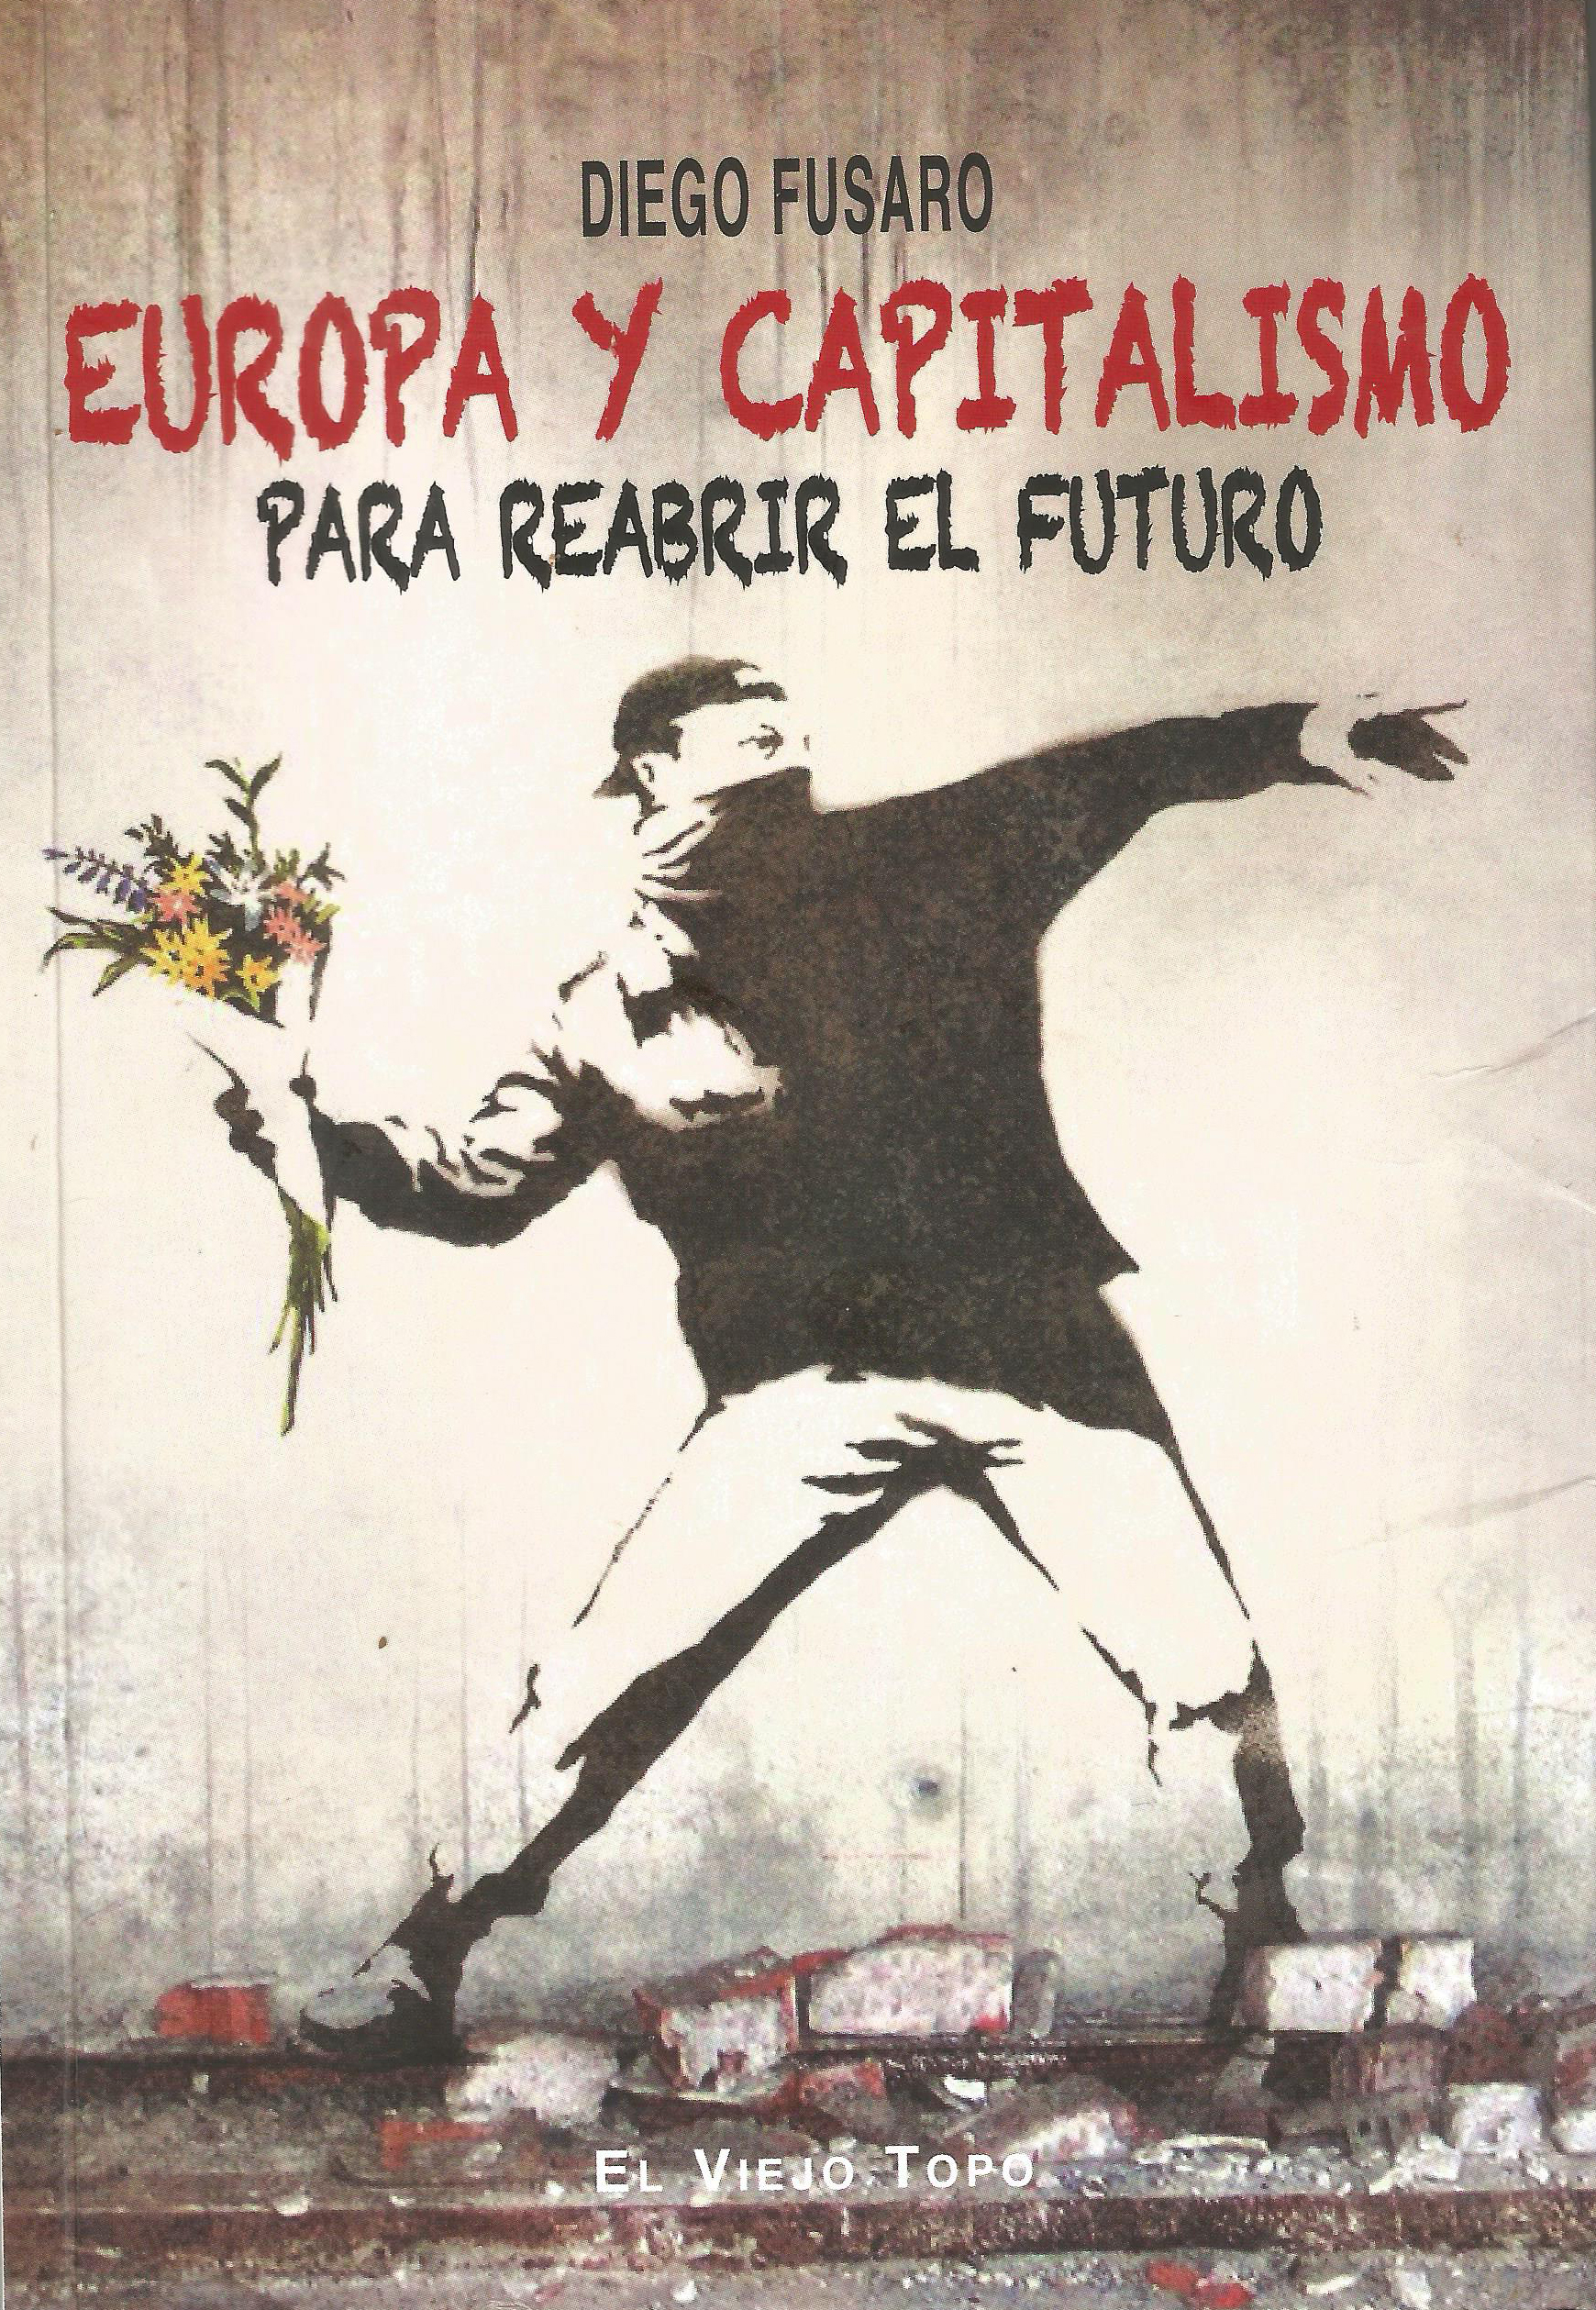 Portada de "Europa y capitalismo. Para reabrir el futuro", de Diego Fusaro. Editorial El viejo topo.